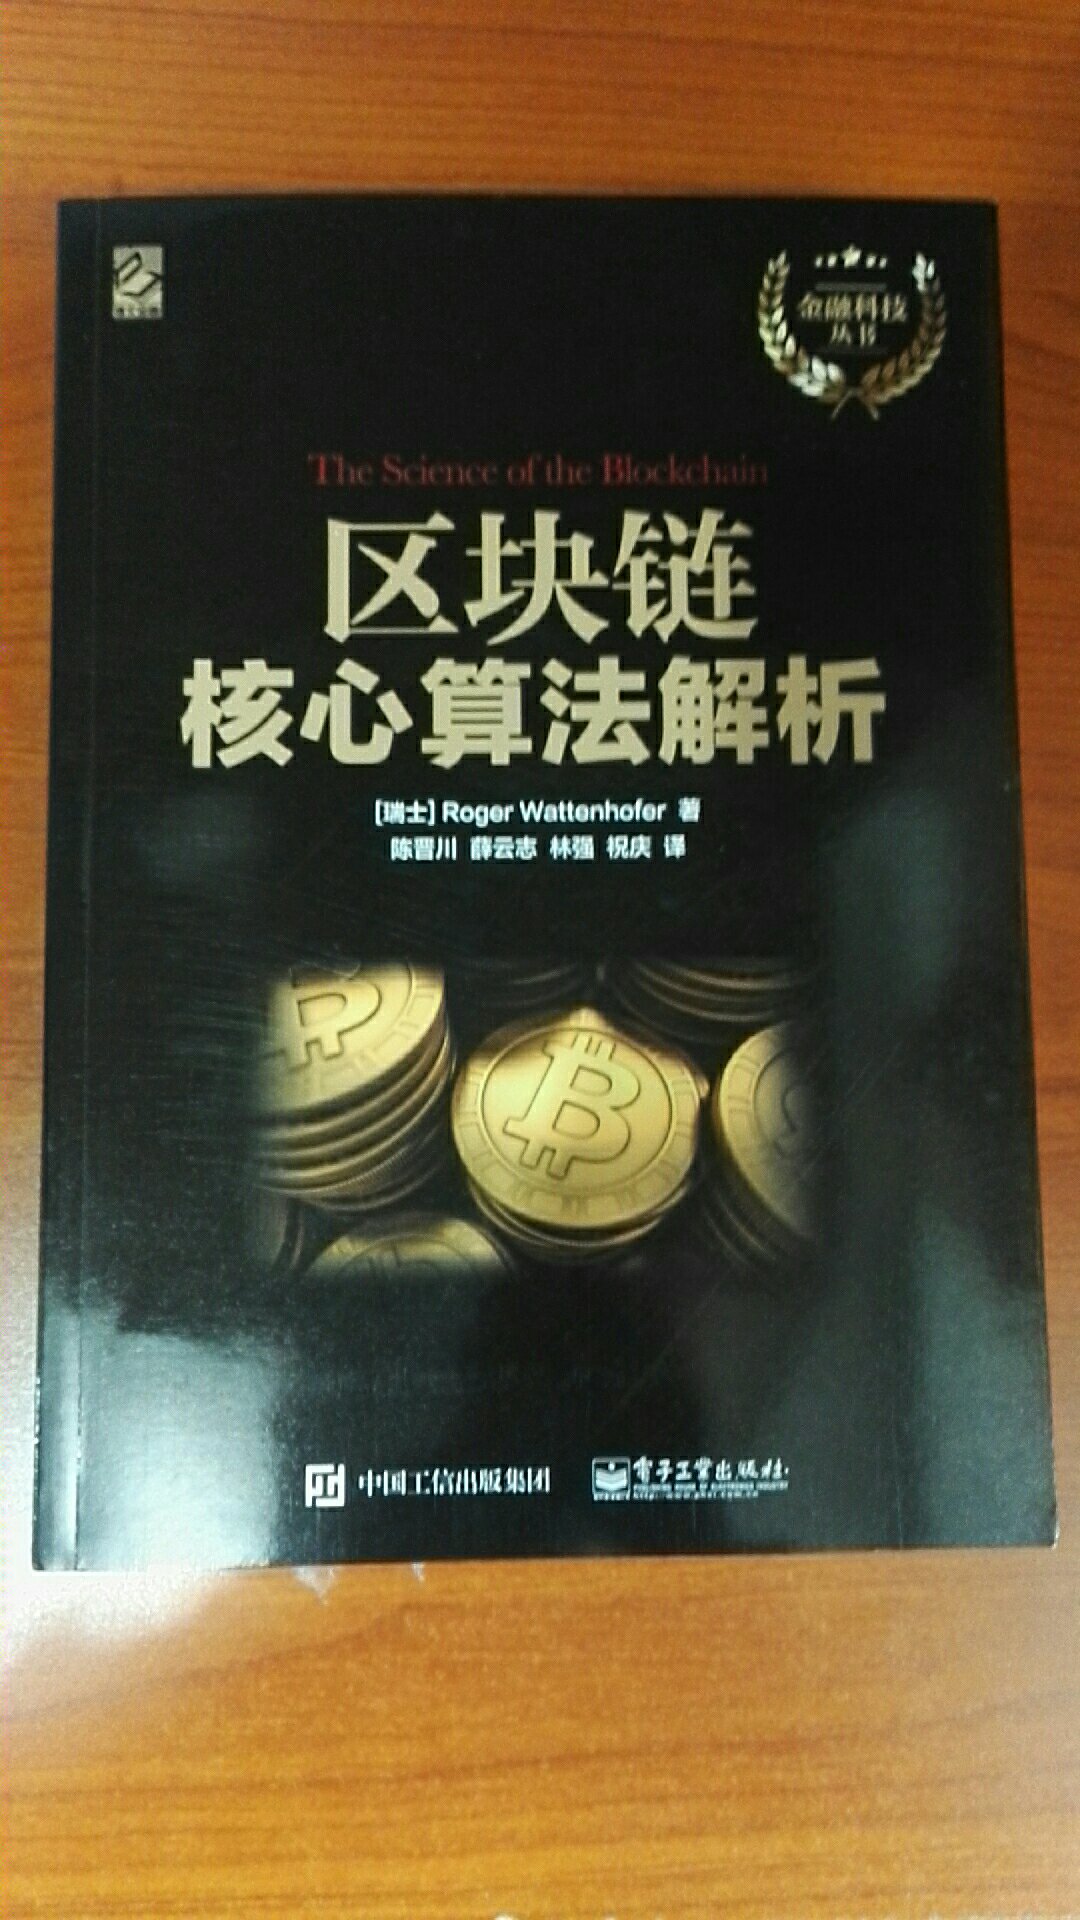 我对于金融科技和区块链非常感兴趣，这本书满足了我的求知欲。这本书写得还不错，美中不足的是只有100多页，内容不够详细。